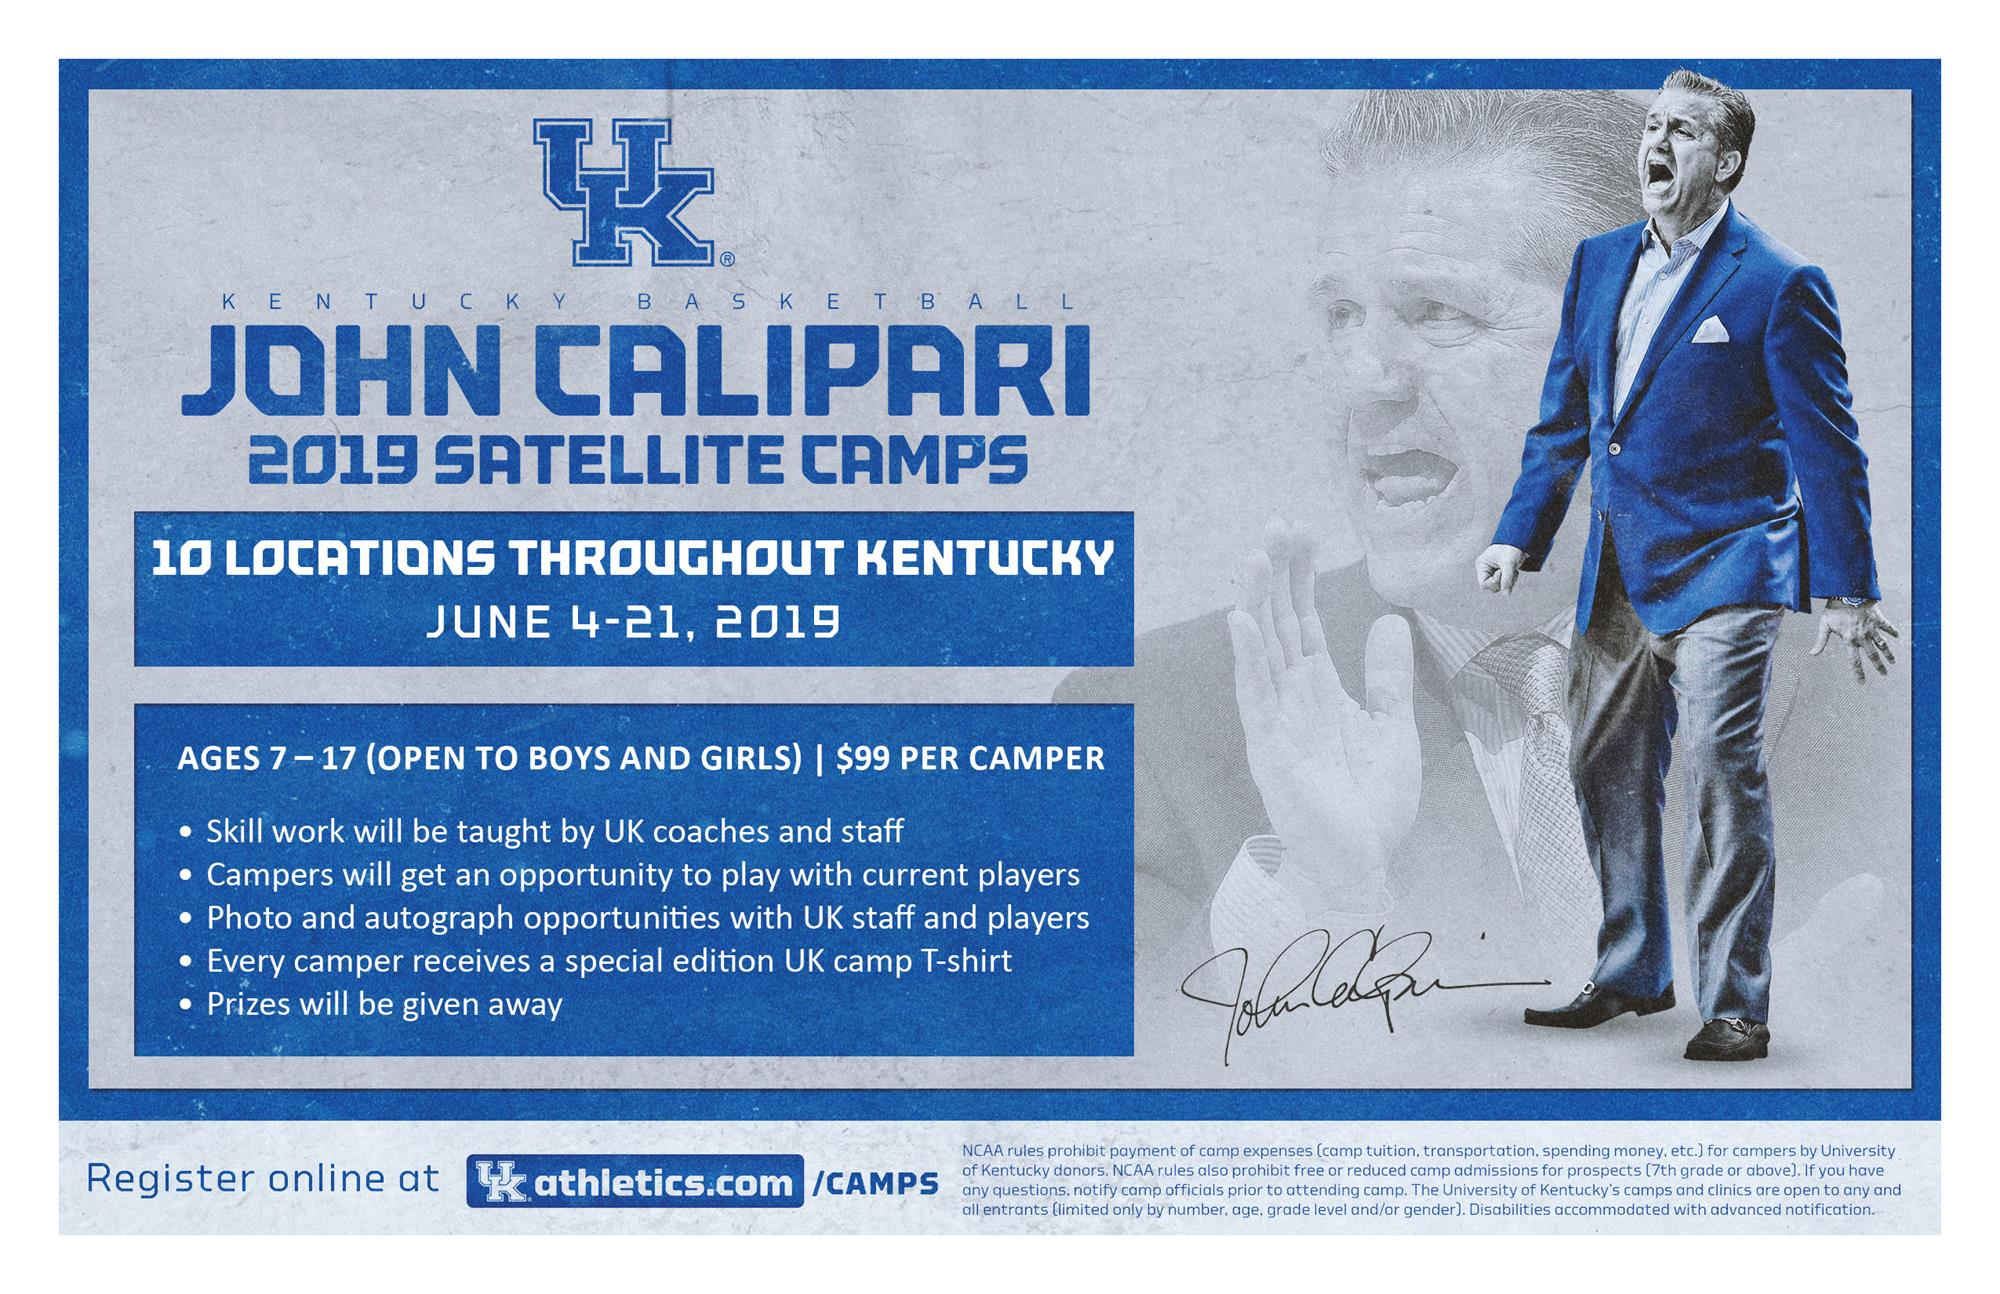 John Calipari Satellite Camp Tour Returns with 10 Stops in June